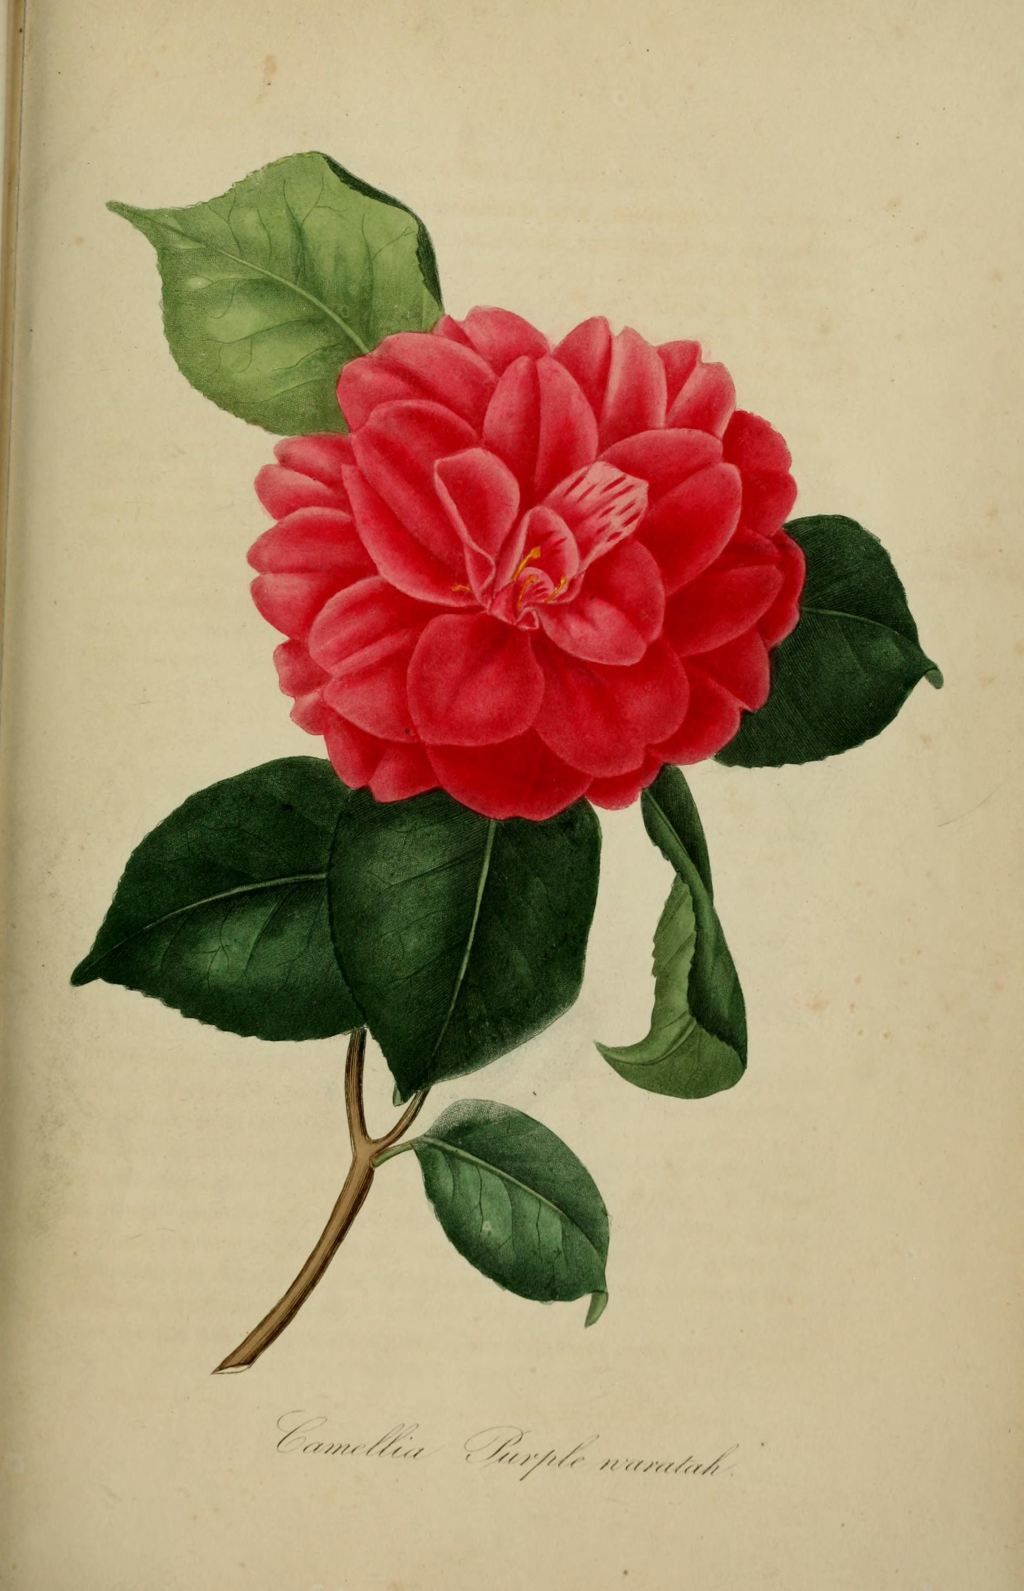 10333 camellia pourpre warratah - camellia japonica purple 